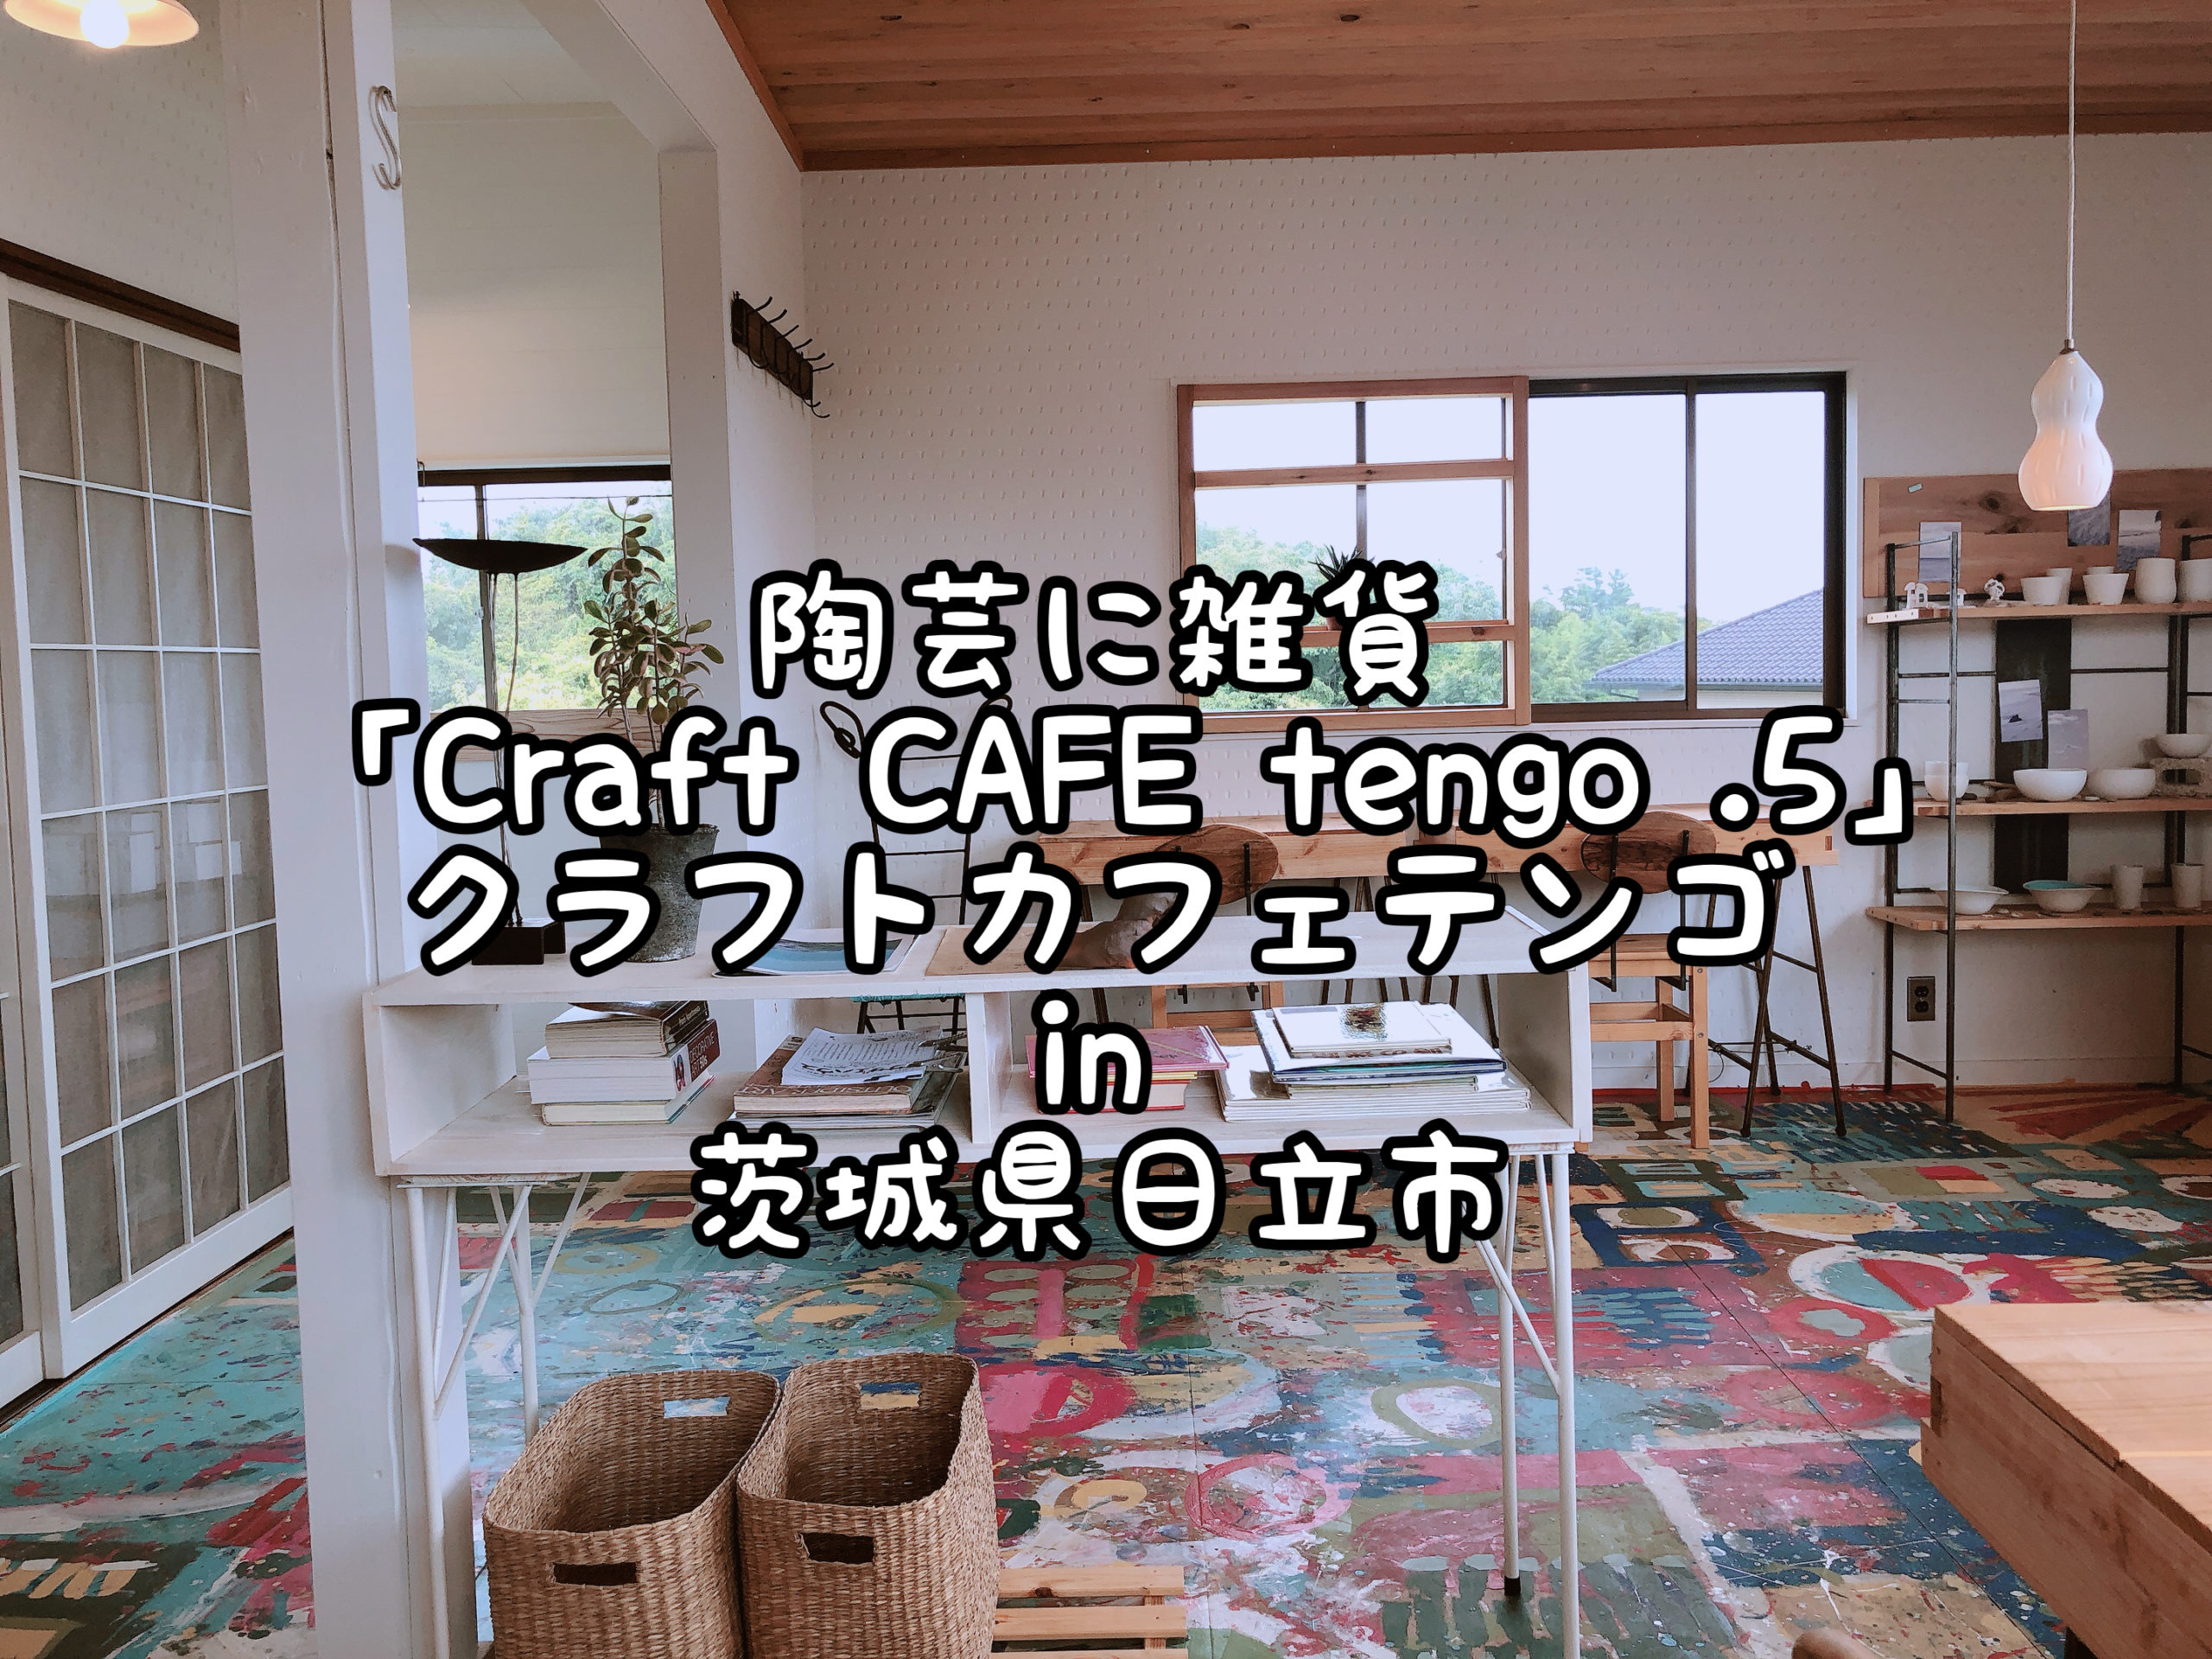 陶芸に雑貨も クラフトカフェテンテンゴ Craft Cafe Tengo 5 In 茨城県日立市 Satochannel